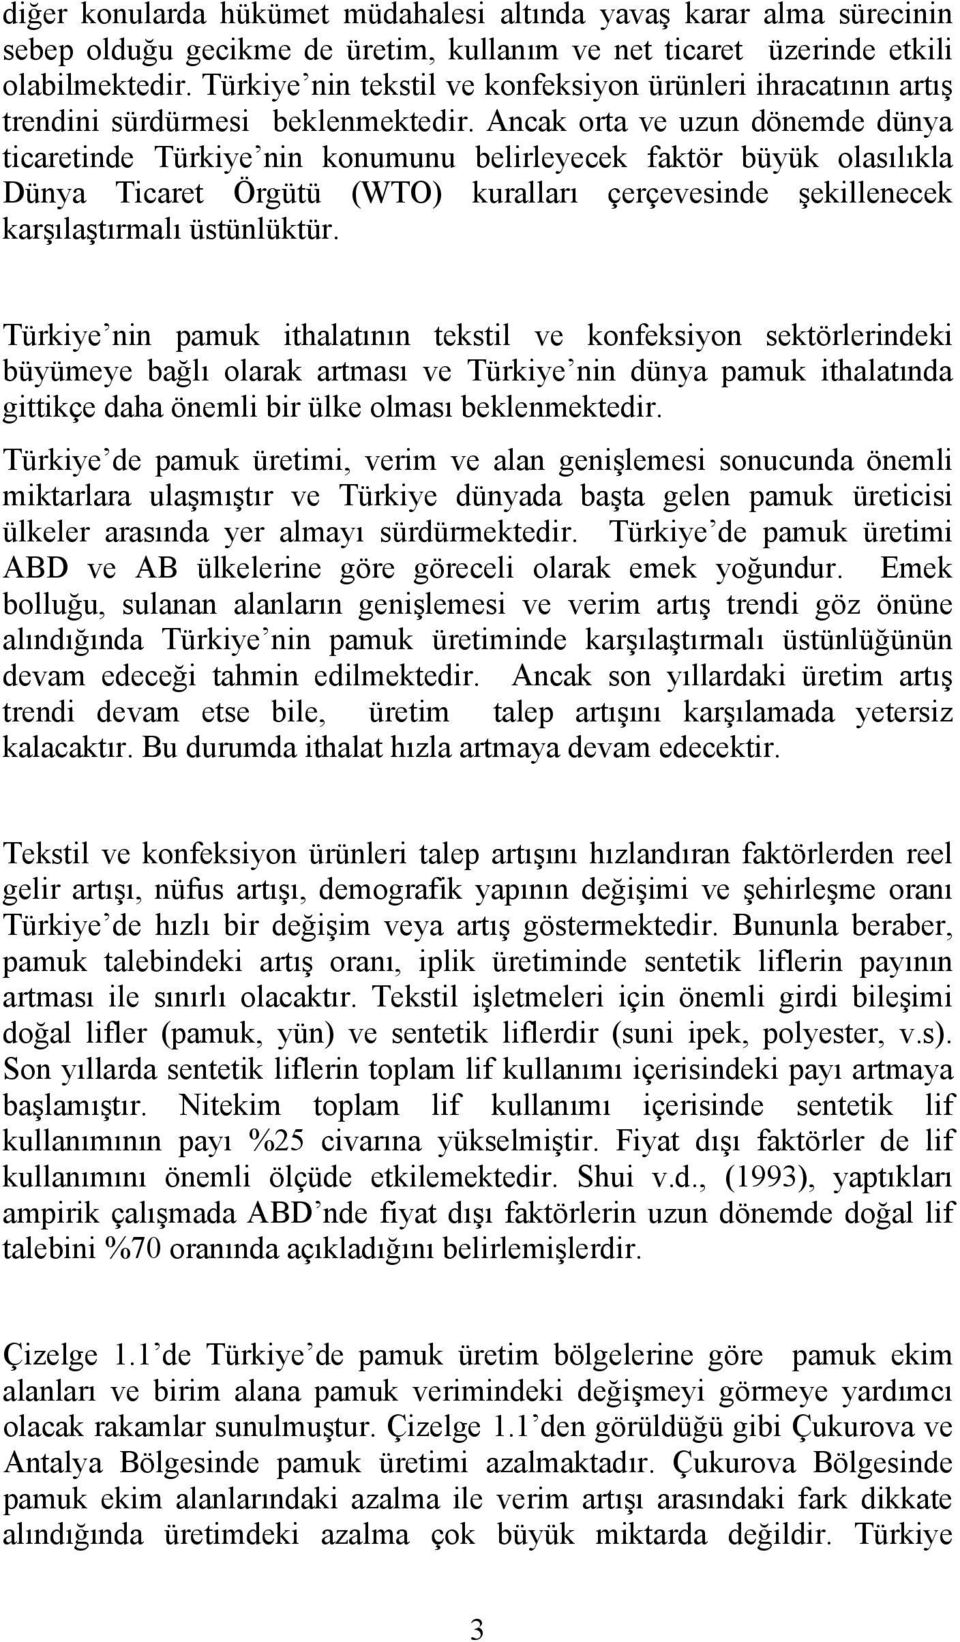 Ancak orta ve uzun dönemde dünya ticaretinde Türkiye nin konumunu belirleyecek faktör büyük olasılıkla Dünya Ticaret Örgütü (WTO) kuralları çerçevesinde şekillenecek karşılaştırmalı üstünlüktür.